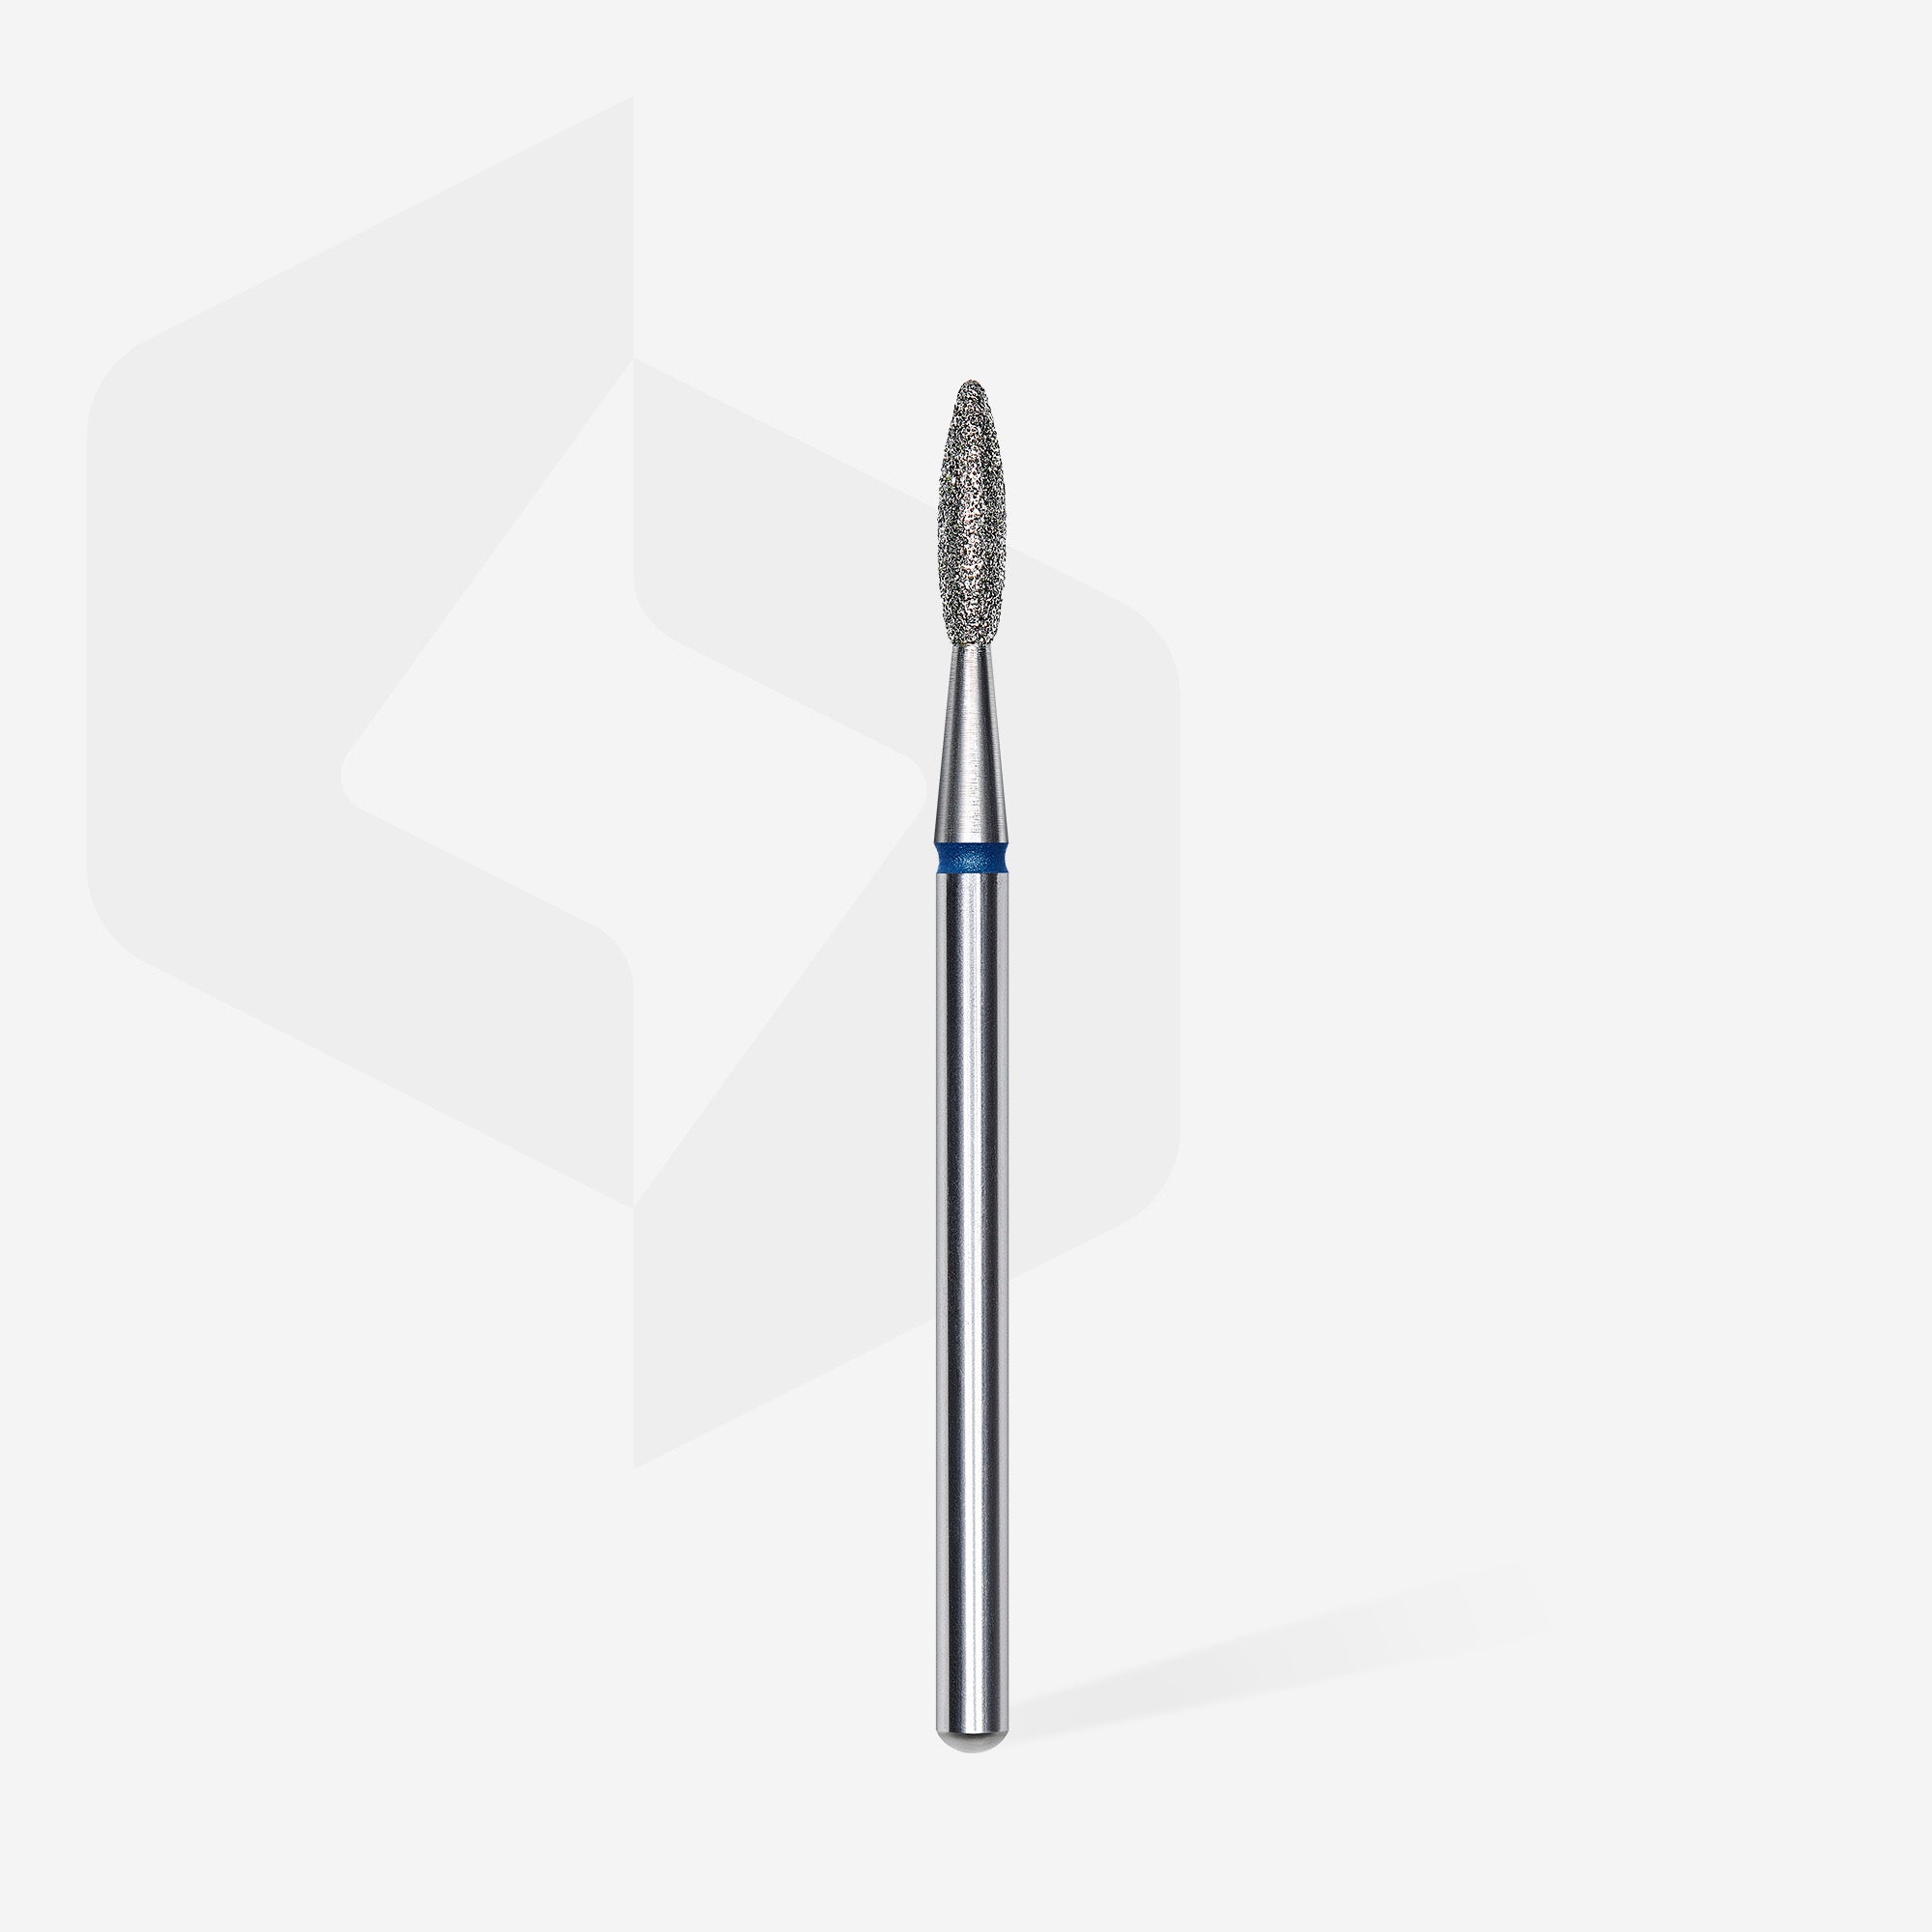 Diamond nail drill bit, "flame", blue, head diameter 2.1 mm, working part 8 mm